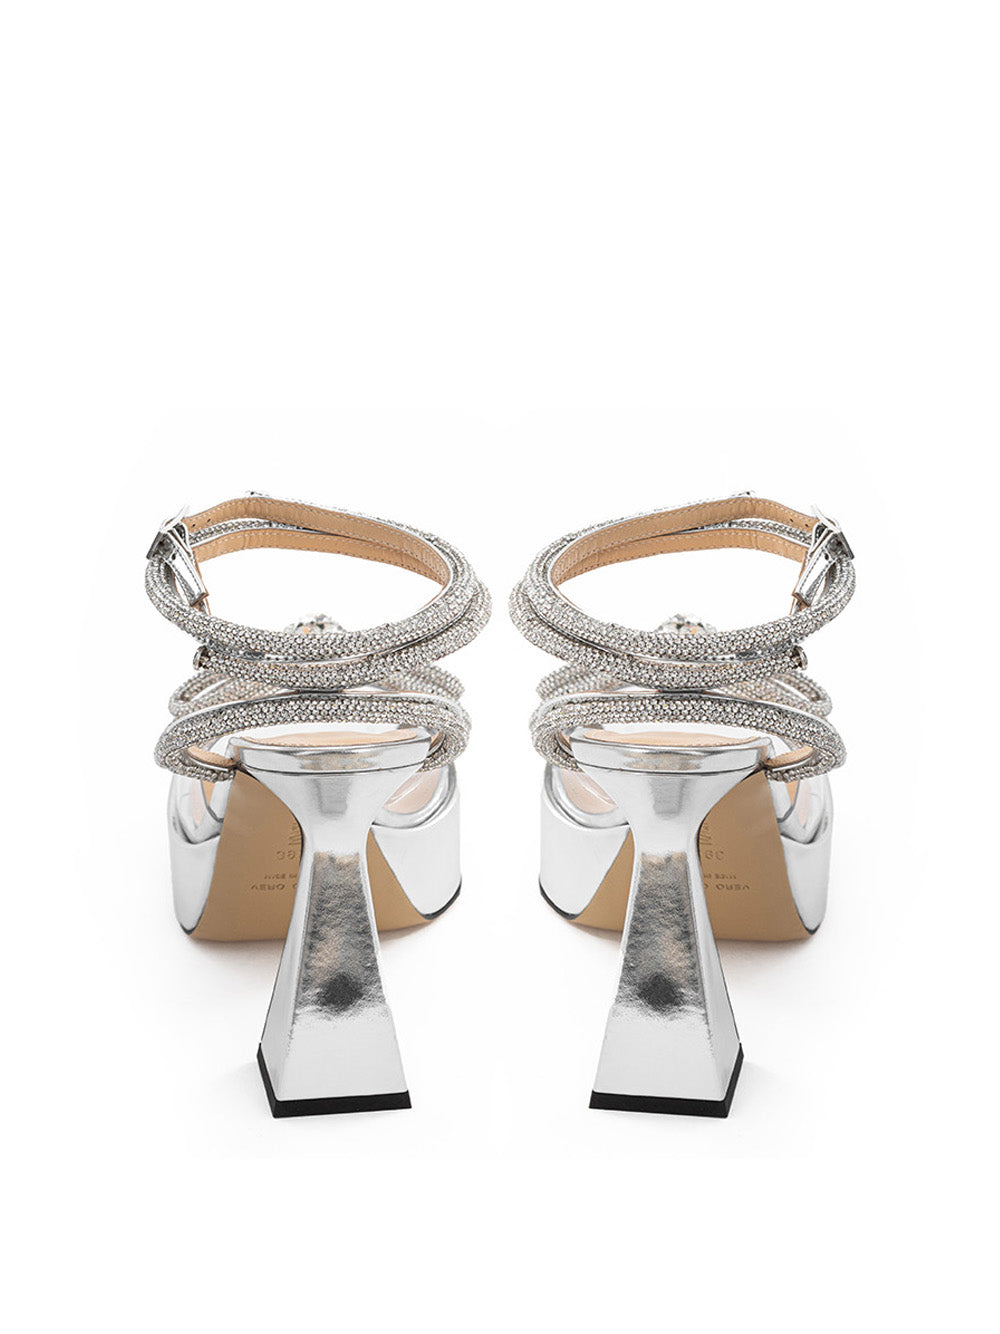 MACH & MACH Double Bow PVC Platform Sandals - DEA STILOSA MILANO